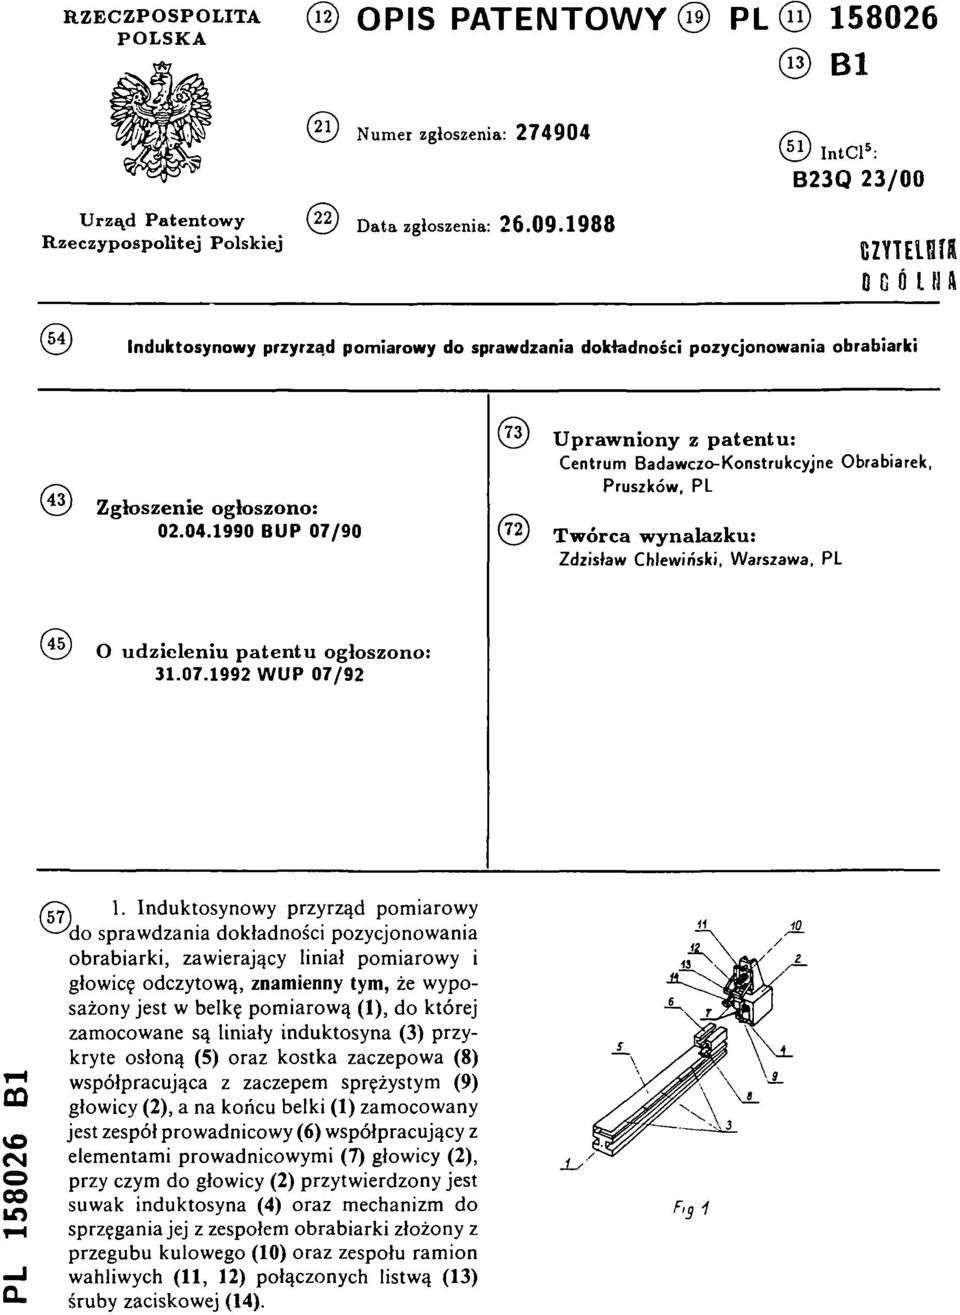 1990 B U P 07/90 (73) U praw niony z patentu: Centrum Badawczo-Konstrukcyjne Obrabiarek, Pruszków, PL (72)T w órca w ynalazku: Zdzisław Chlewiński, Warszawa, PL (45)O u dzieleniu patentu ogłoszono: